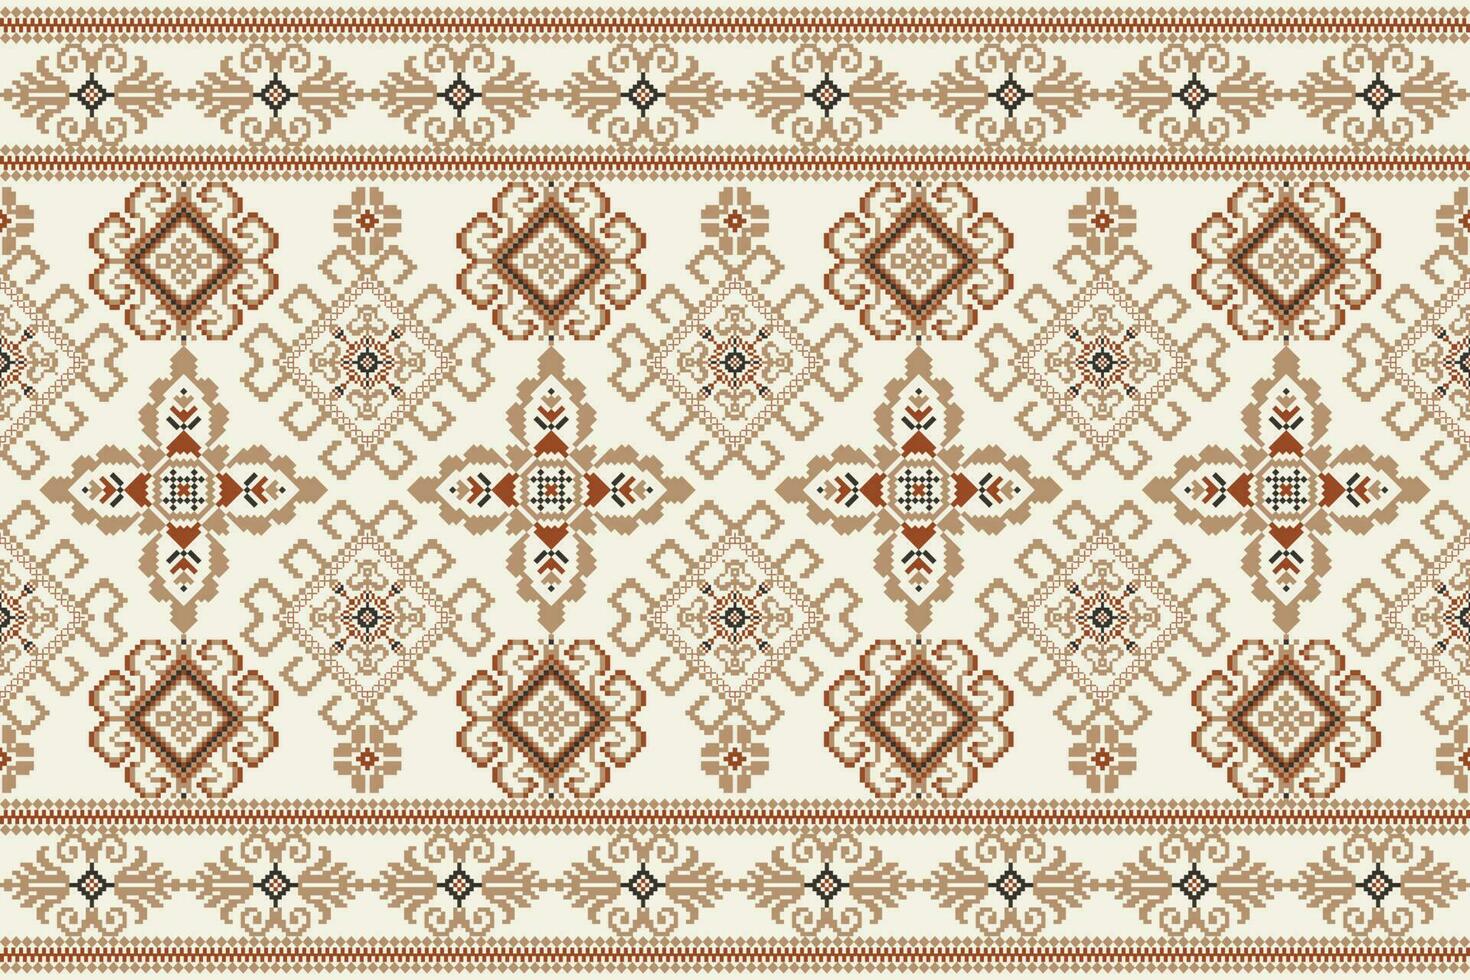 geometrico floreale attraversare punto ricamo su bianca sfondo.etnico orientale modello tradizionale.azteco stile astratto vettore illustrazione.disegno per trama, tessuto, abbigliamento, avvolgimento, decorazione, sciarpa.